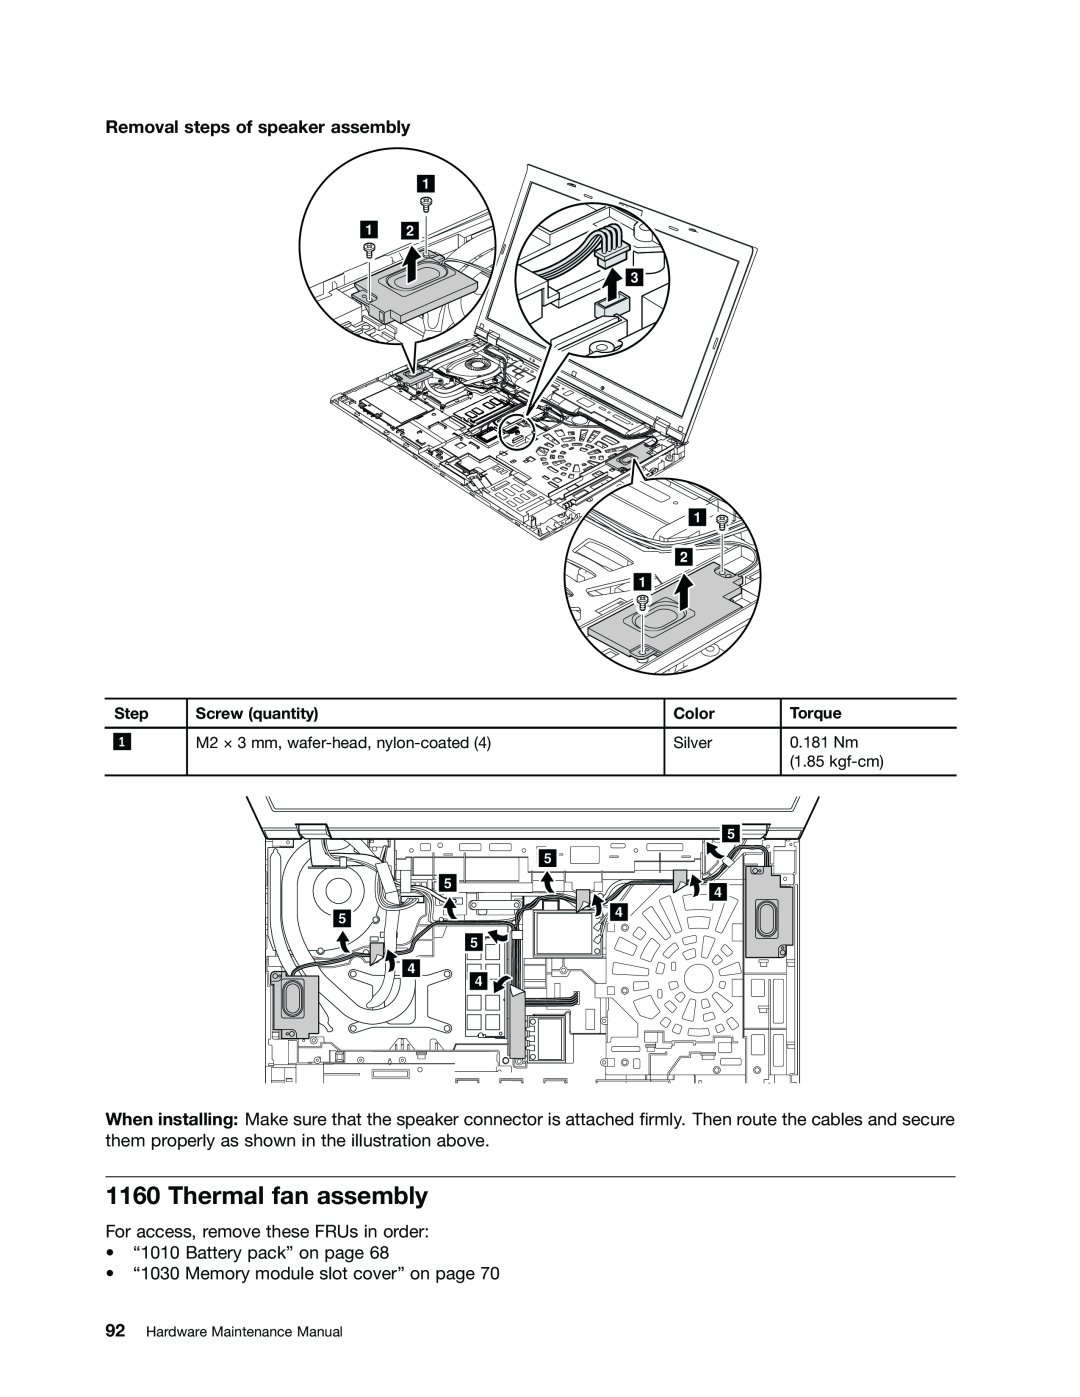 Lenovo 2394F1U, W530, T530i, 244723U manual Thermal fan assembly, Removal steps of speaker assembly 